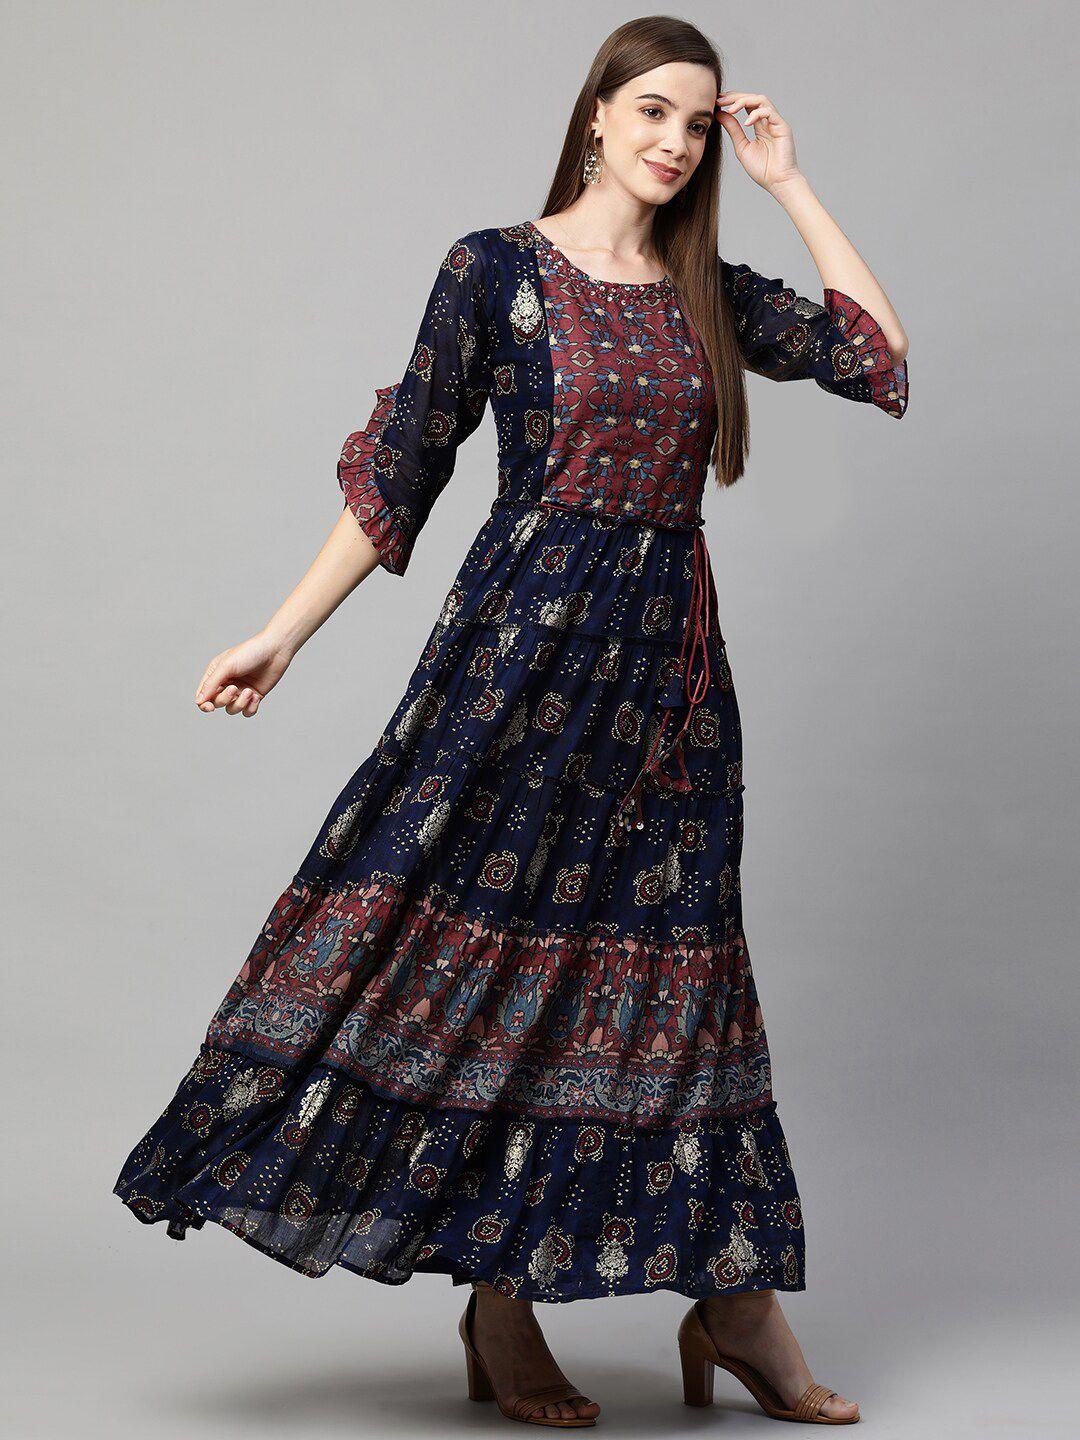 fashor-navy-blue-ethnic-motifs-ethnic-maxi-dress